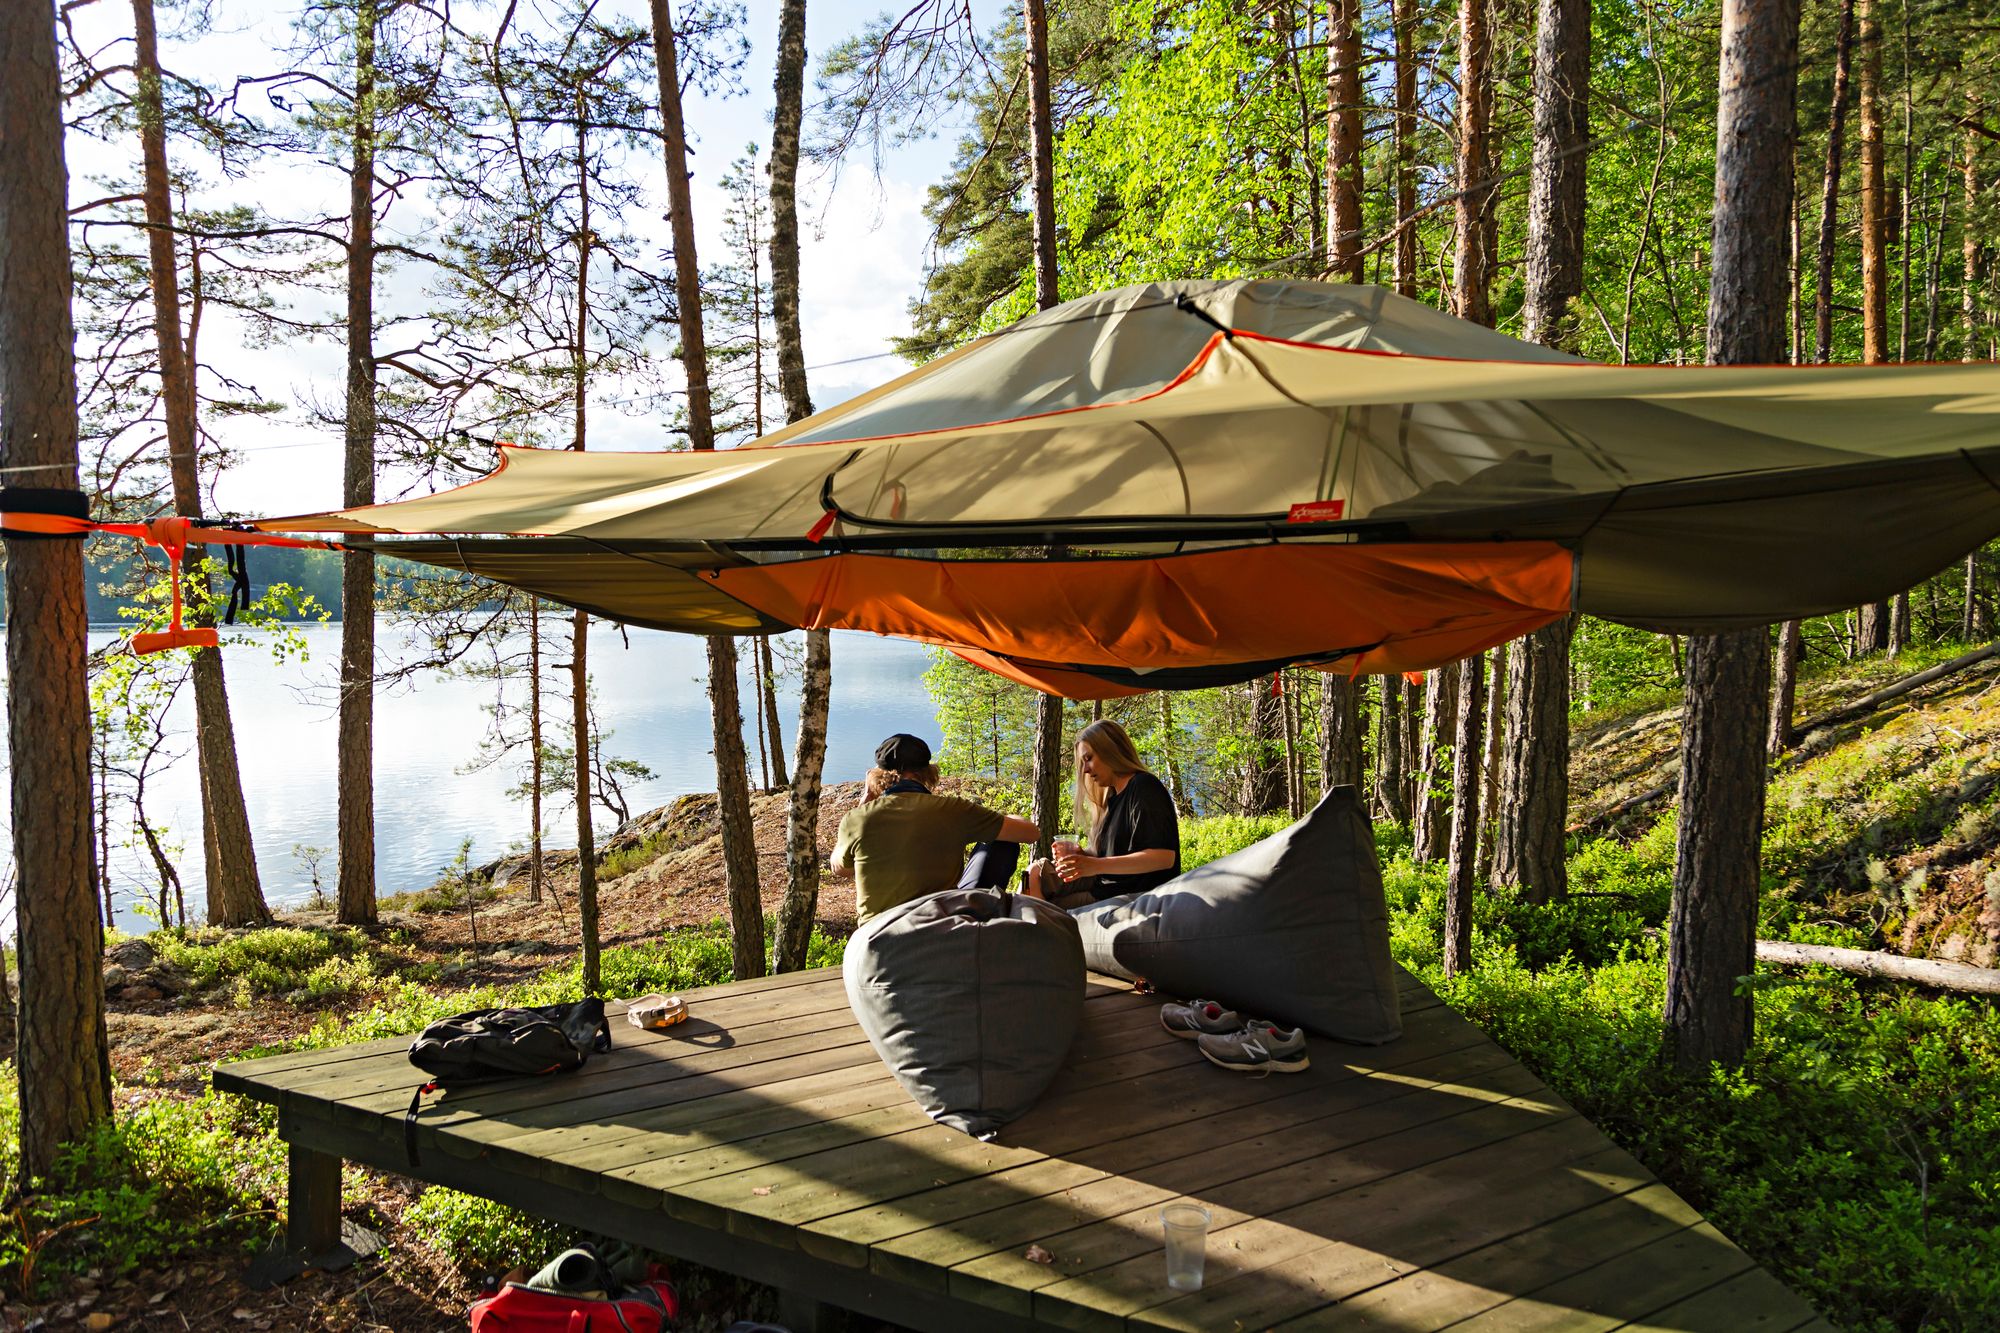 Teltan alle asennetulla puisella deskillä on viihtyisää viettää kaunista kesäiltaa. © Anna-Karoliina Pelto